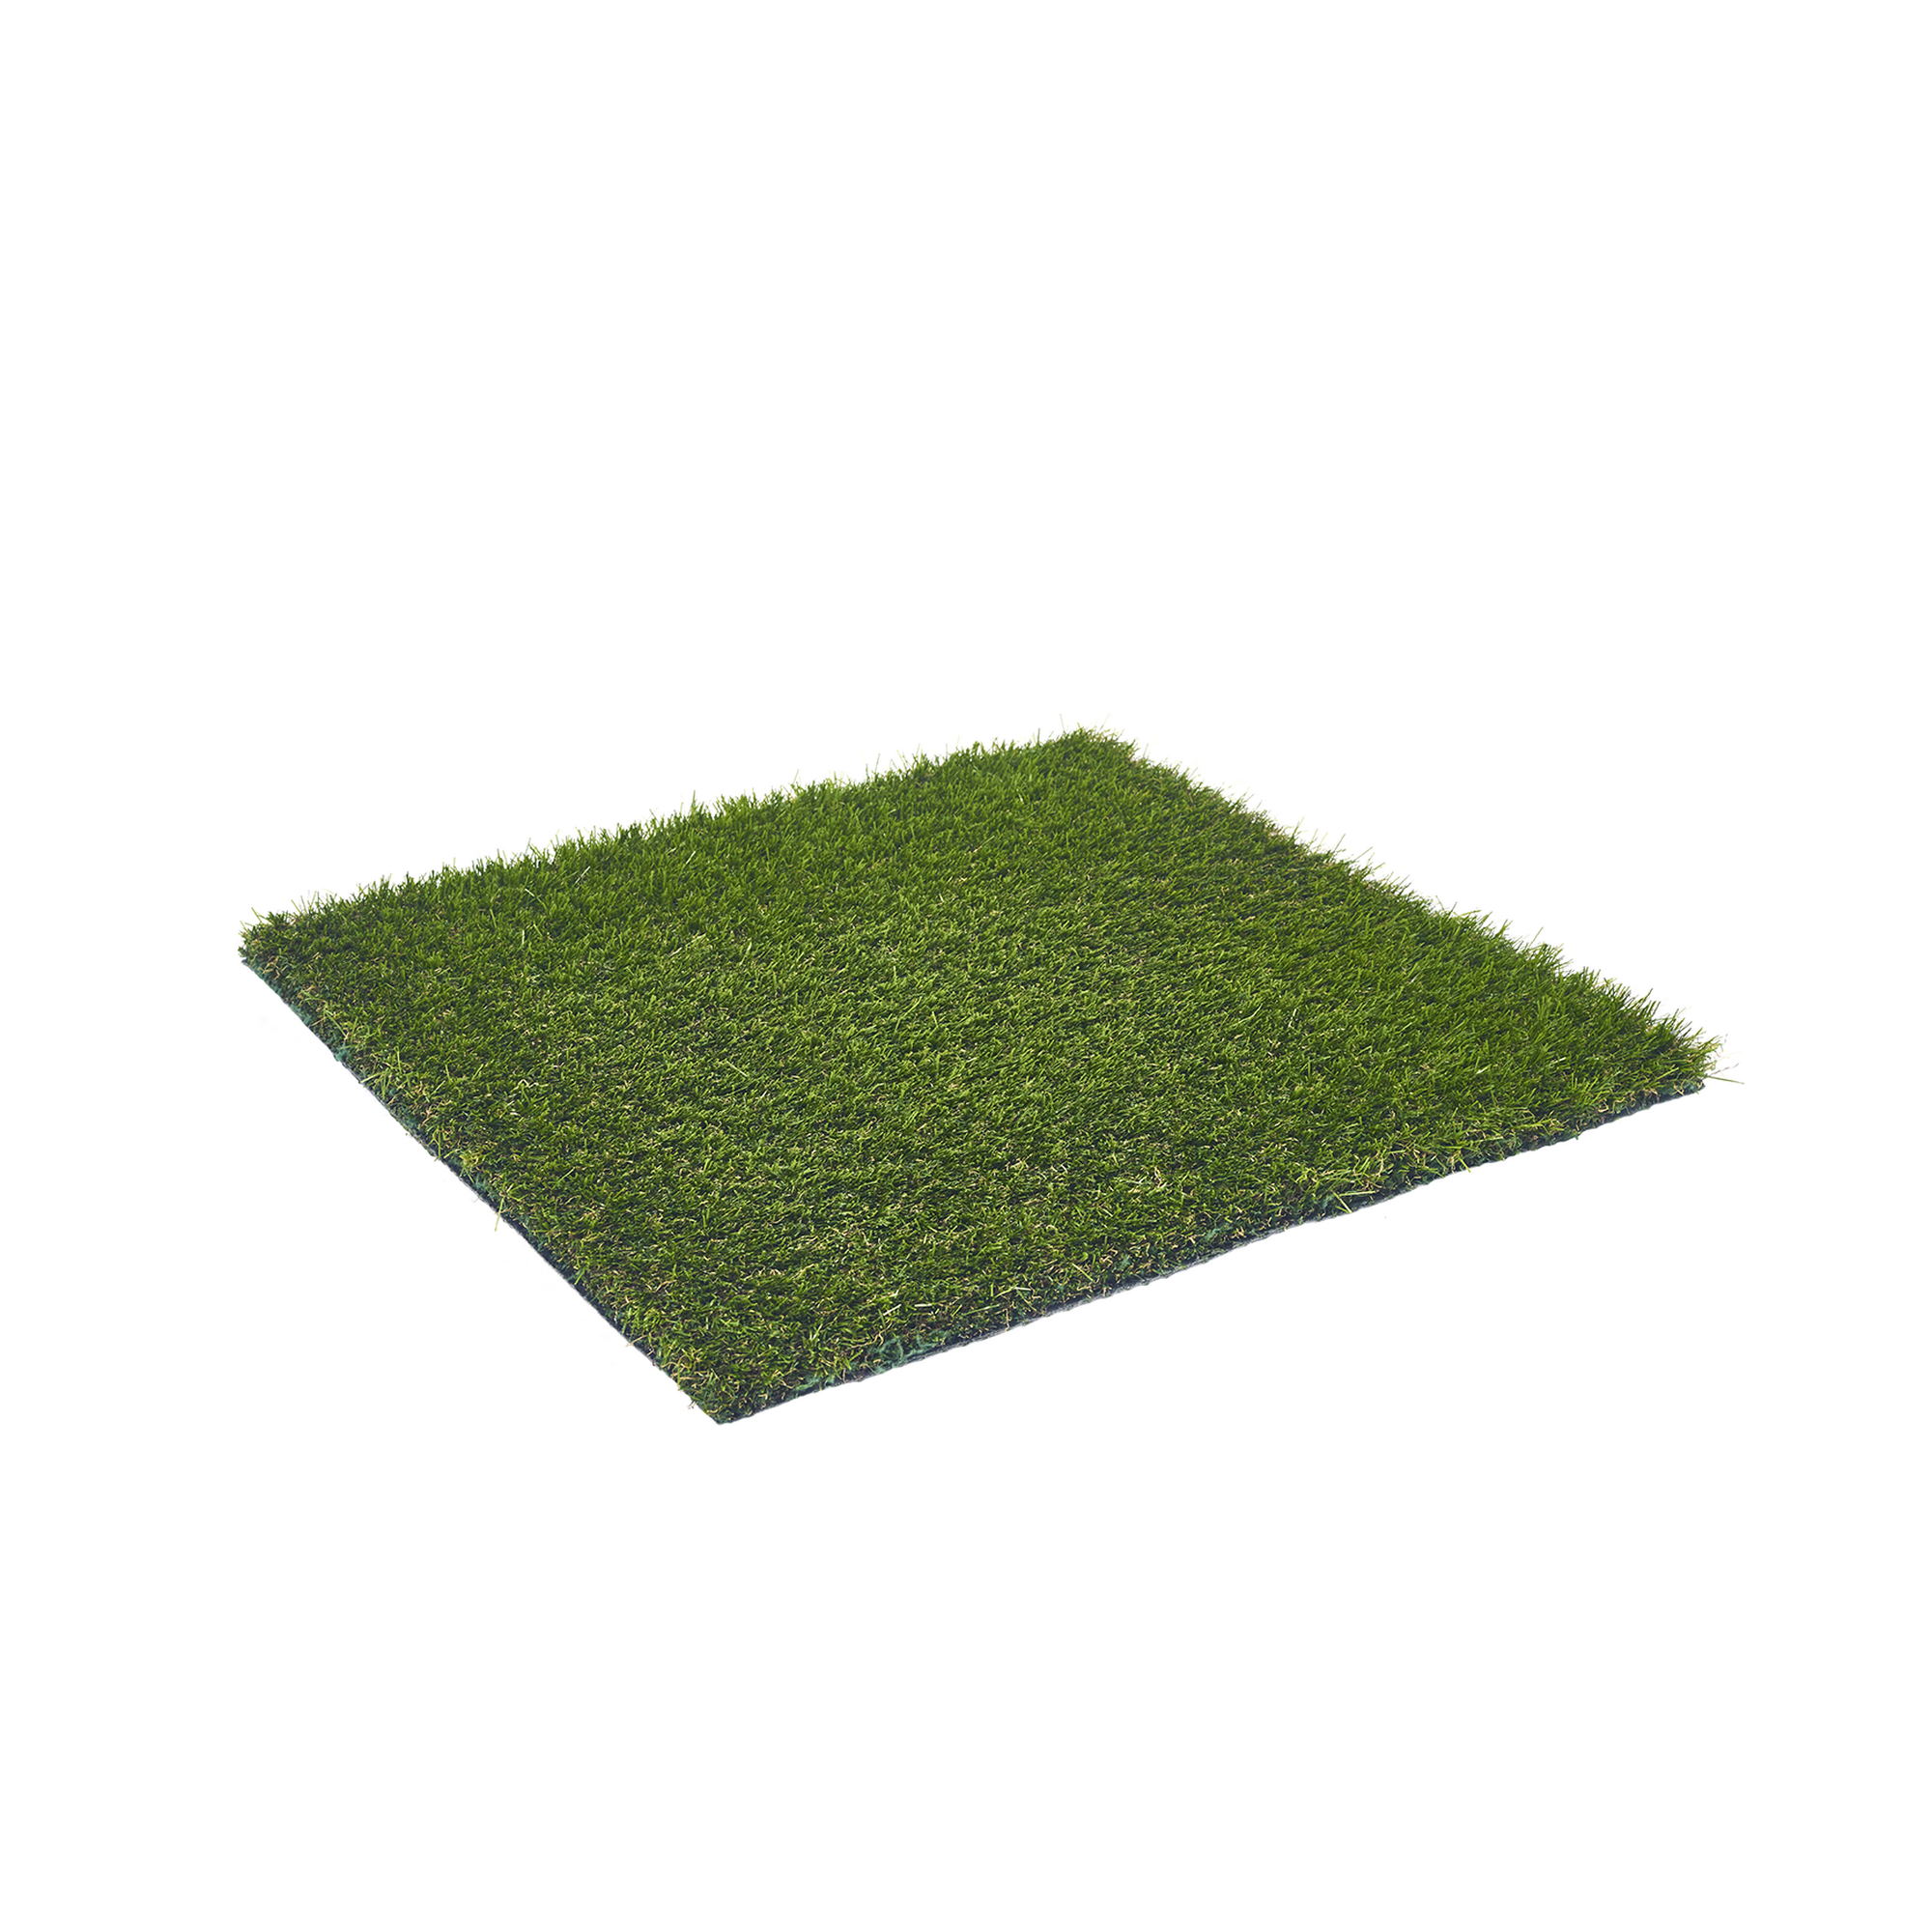 Rasenteppich 'Forestland' Meterware grün, Breite 400 cm + product picture